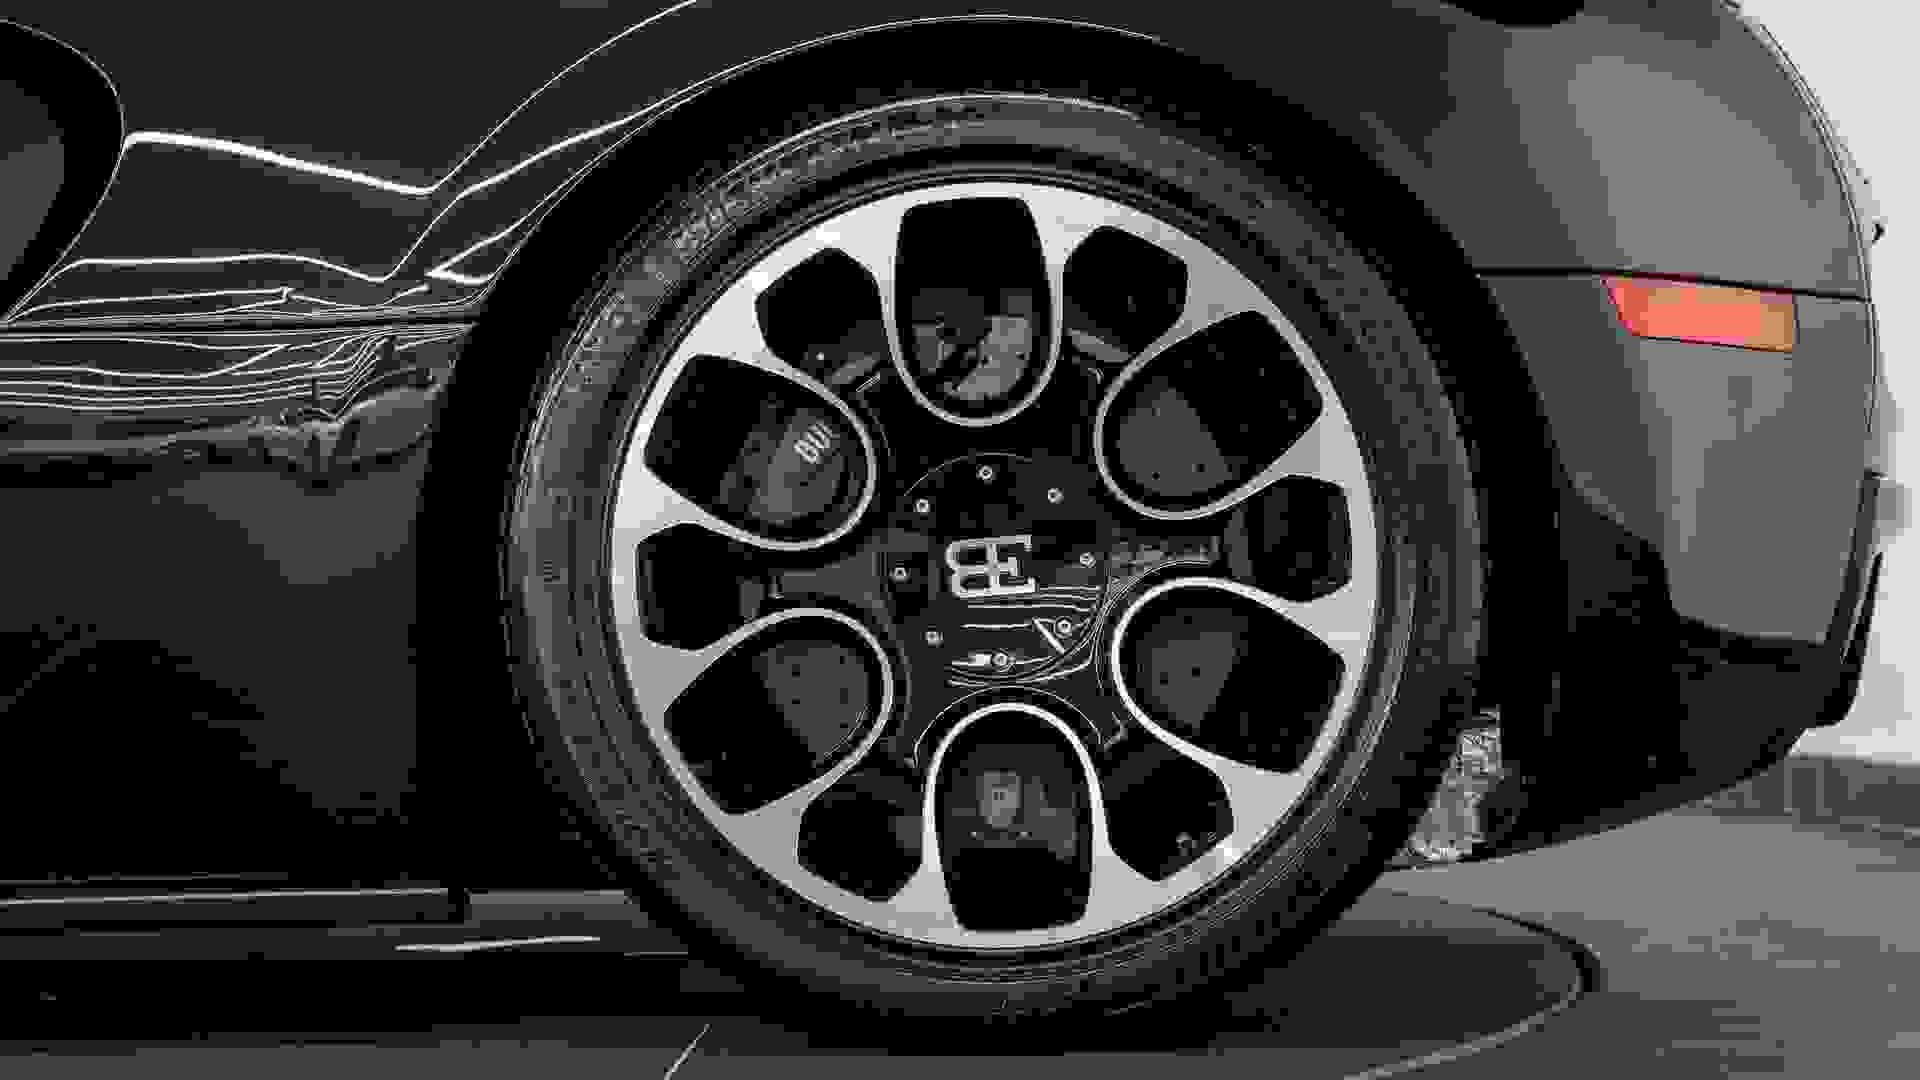 Bugatti Veyron Photo 18d0b3f6-a669-4694-b6de-e1cf694afc1e.jpg